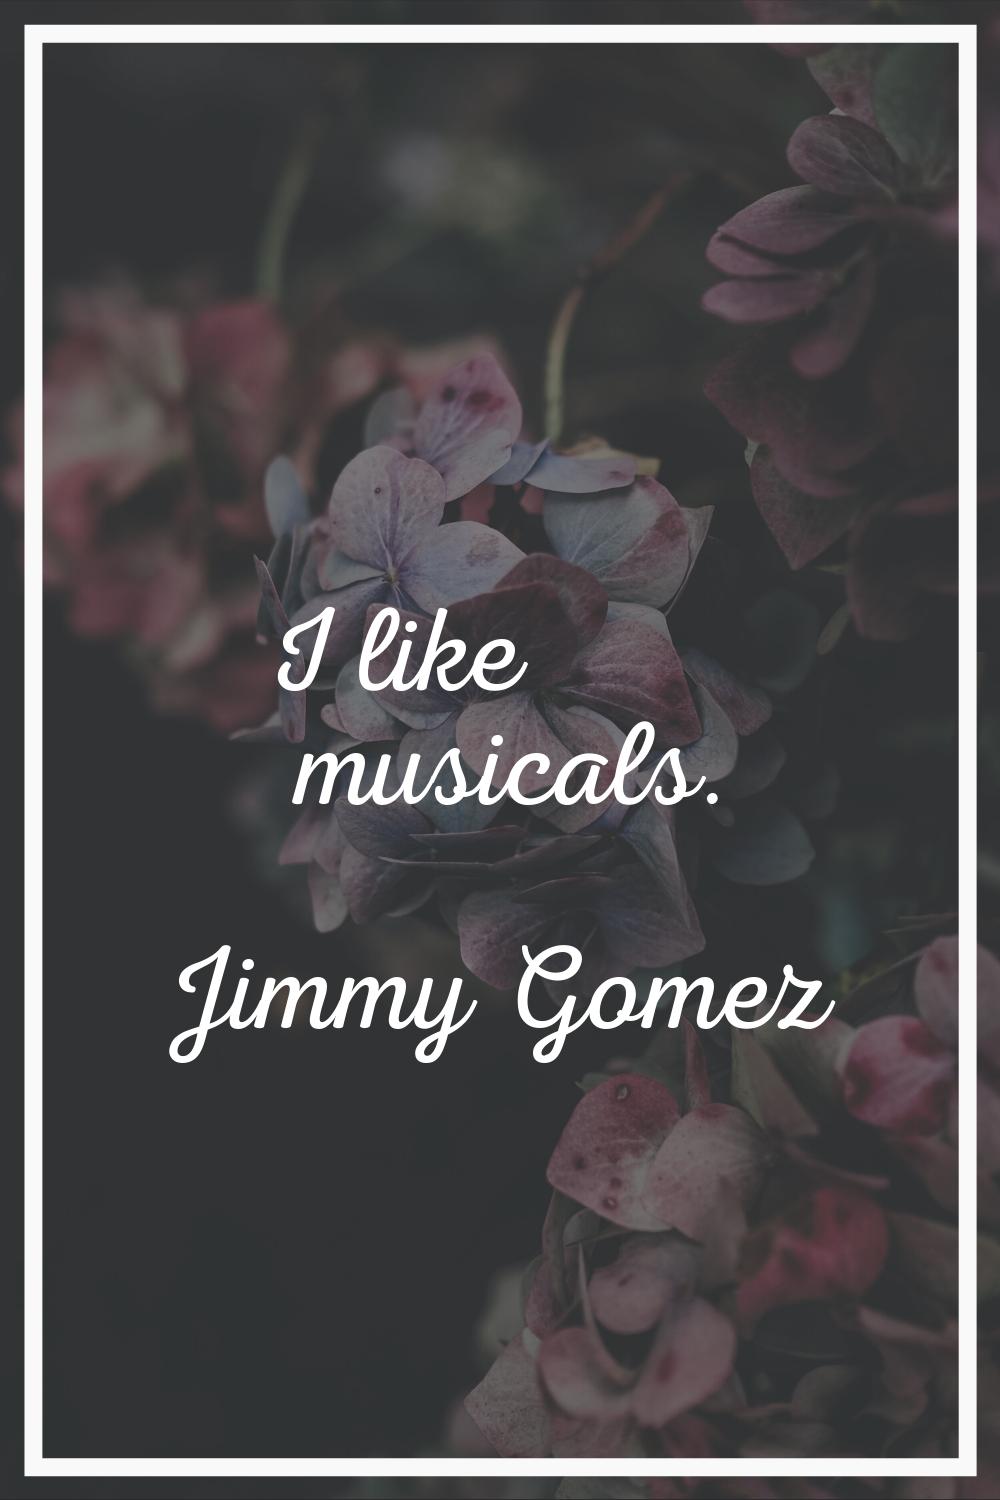 I like musicals.